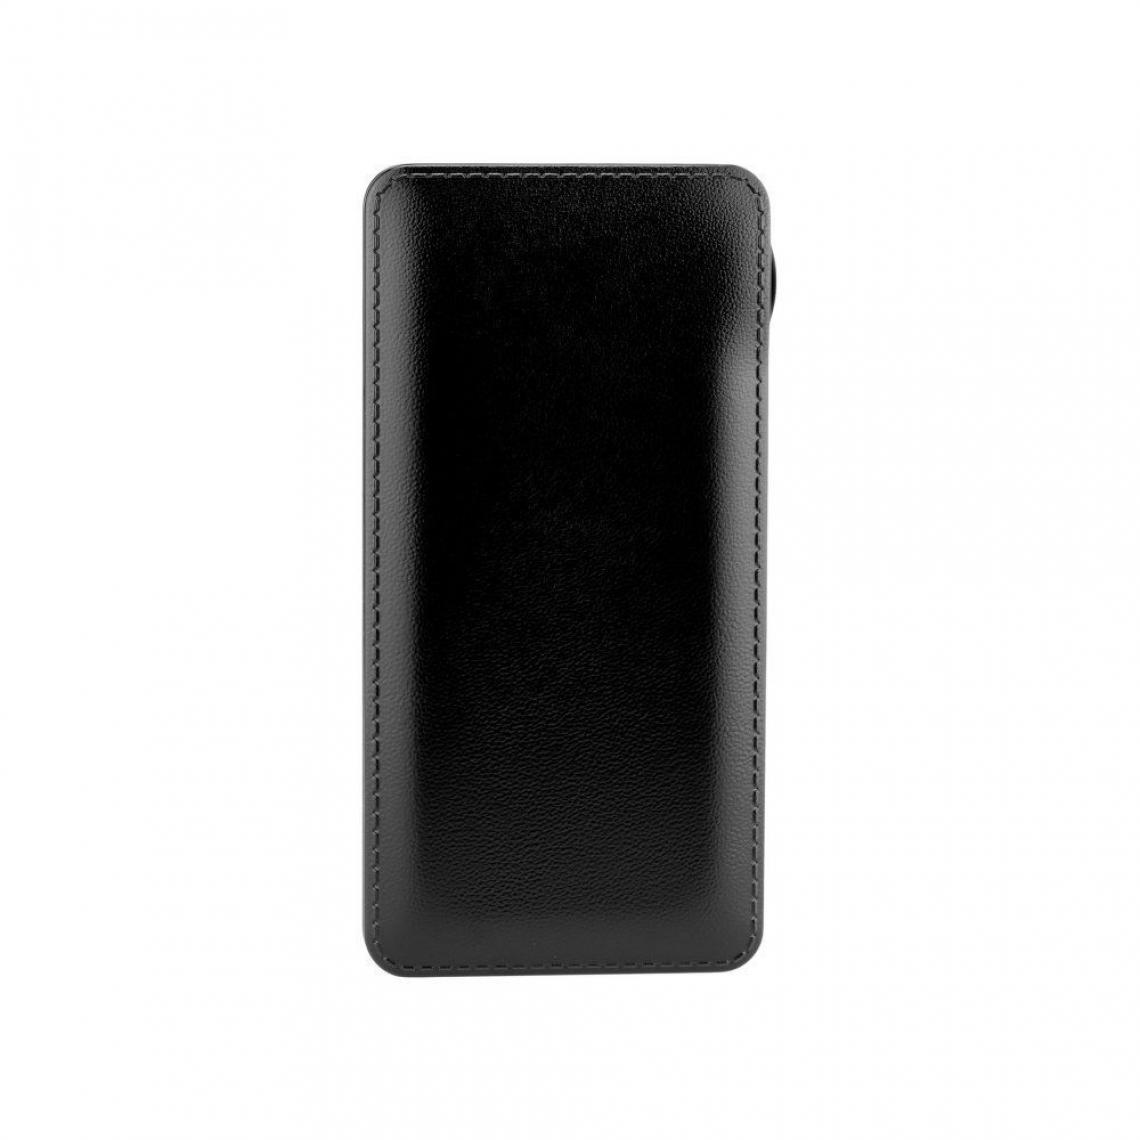 Ozzzo - Chargeur batterie externe 20000 mAh powerbank ozzzo noir pour SAMSUNG N7100 Galaxy Note 2 - Autres accessoires smartphone